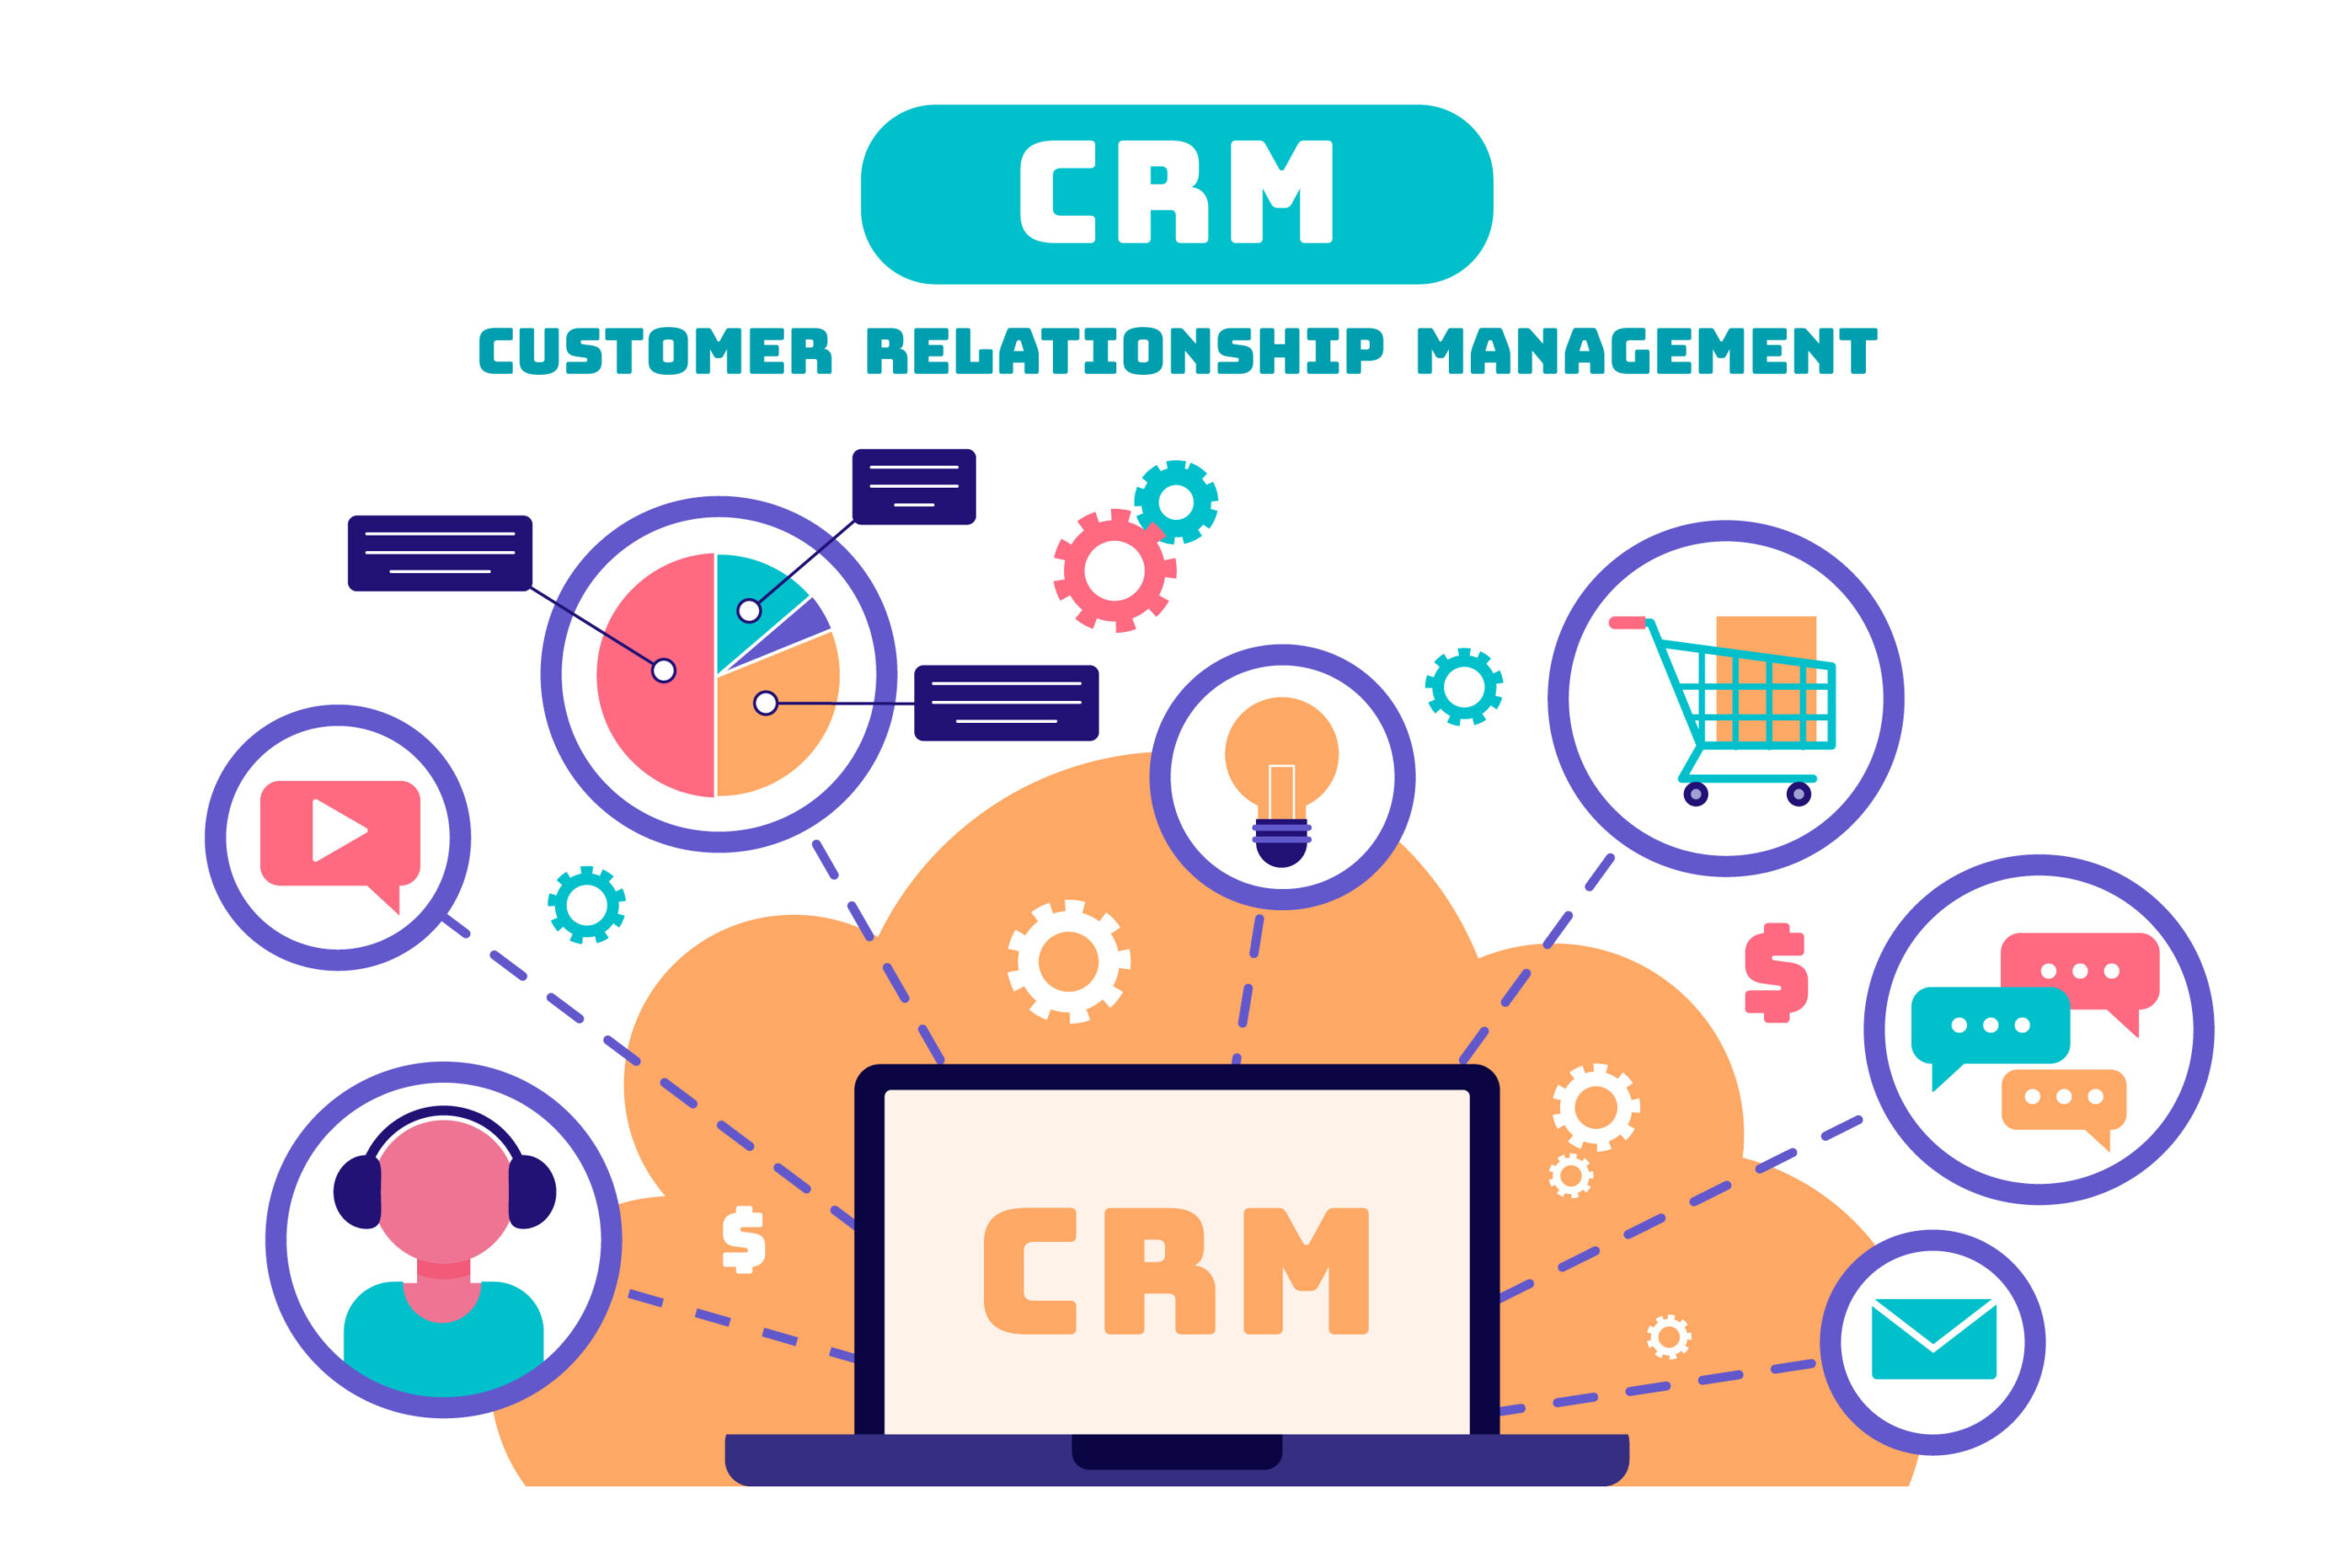 CRM or Customer Relationship Management